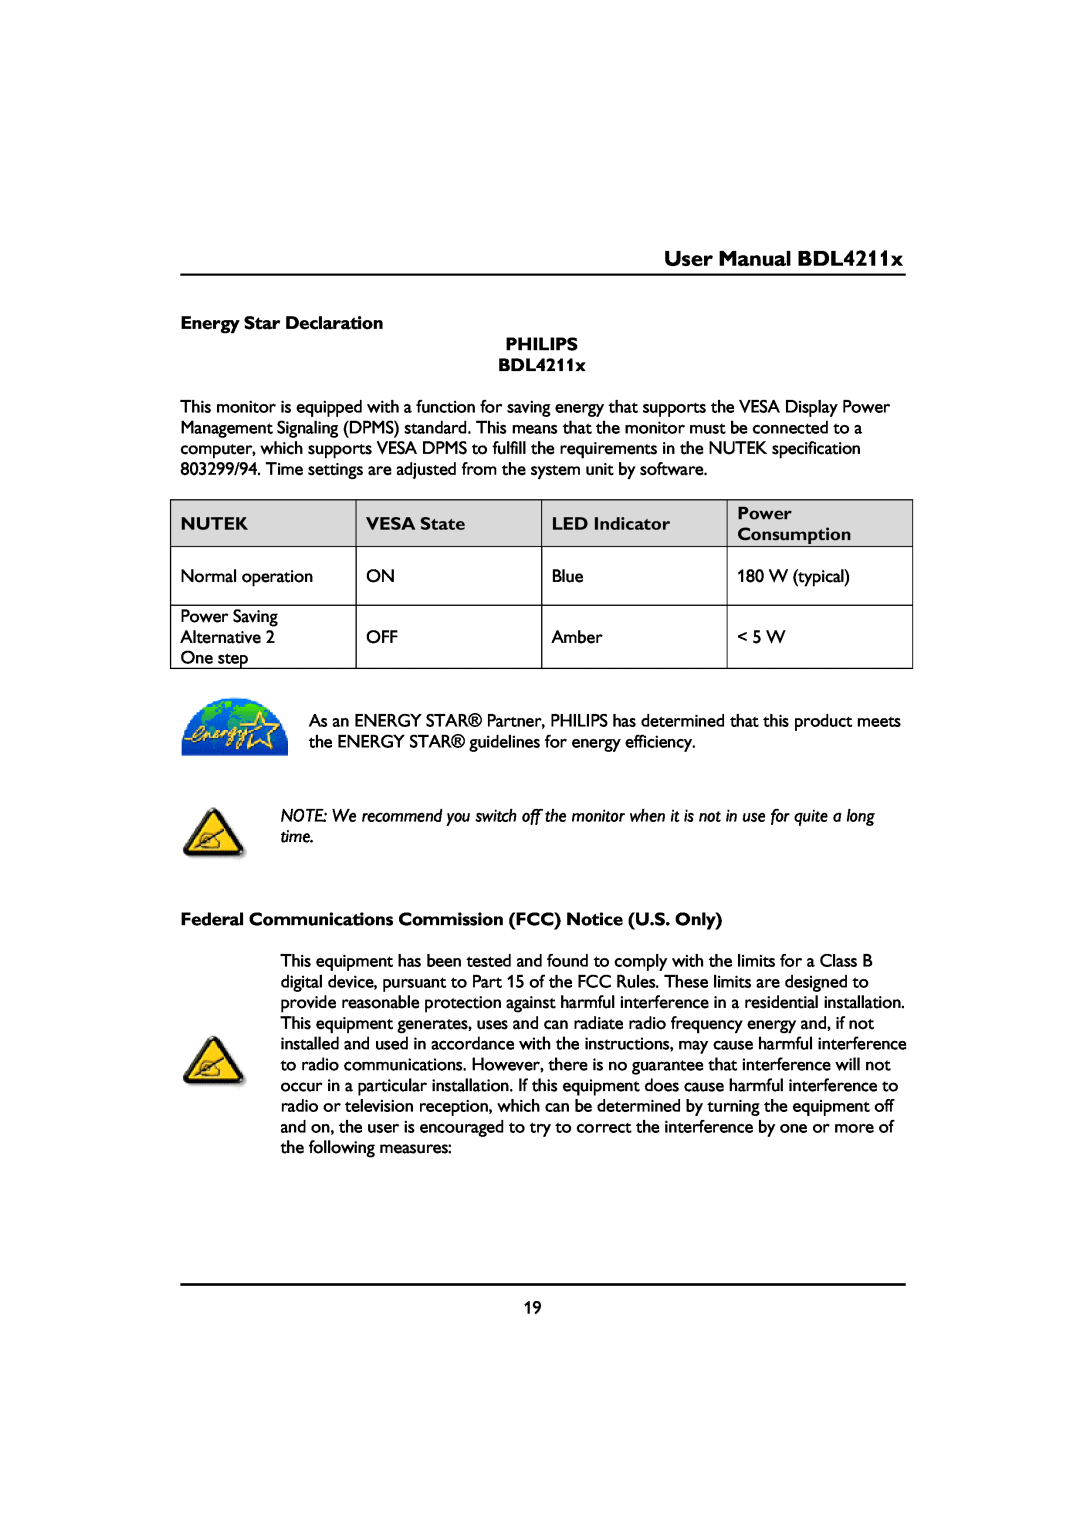 Philips BDL4211V User Manual BDL4211x, Energy Star Declaration PHILIPS BDL4211x, Nutek, VESA State, LED Indicator, Power 